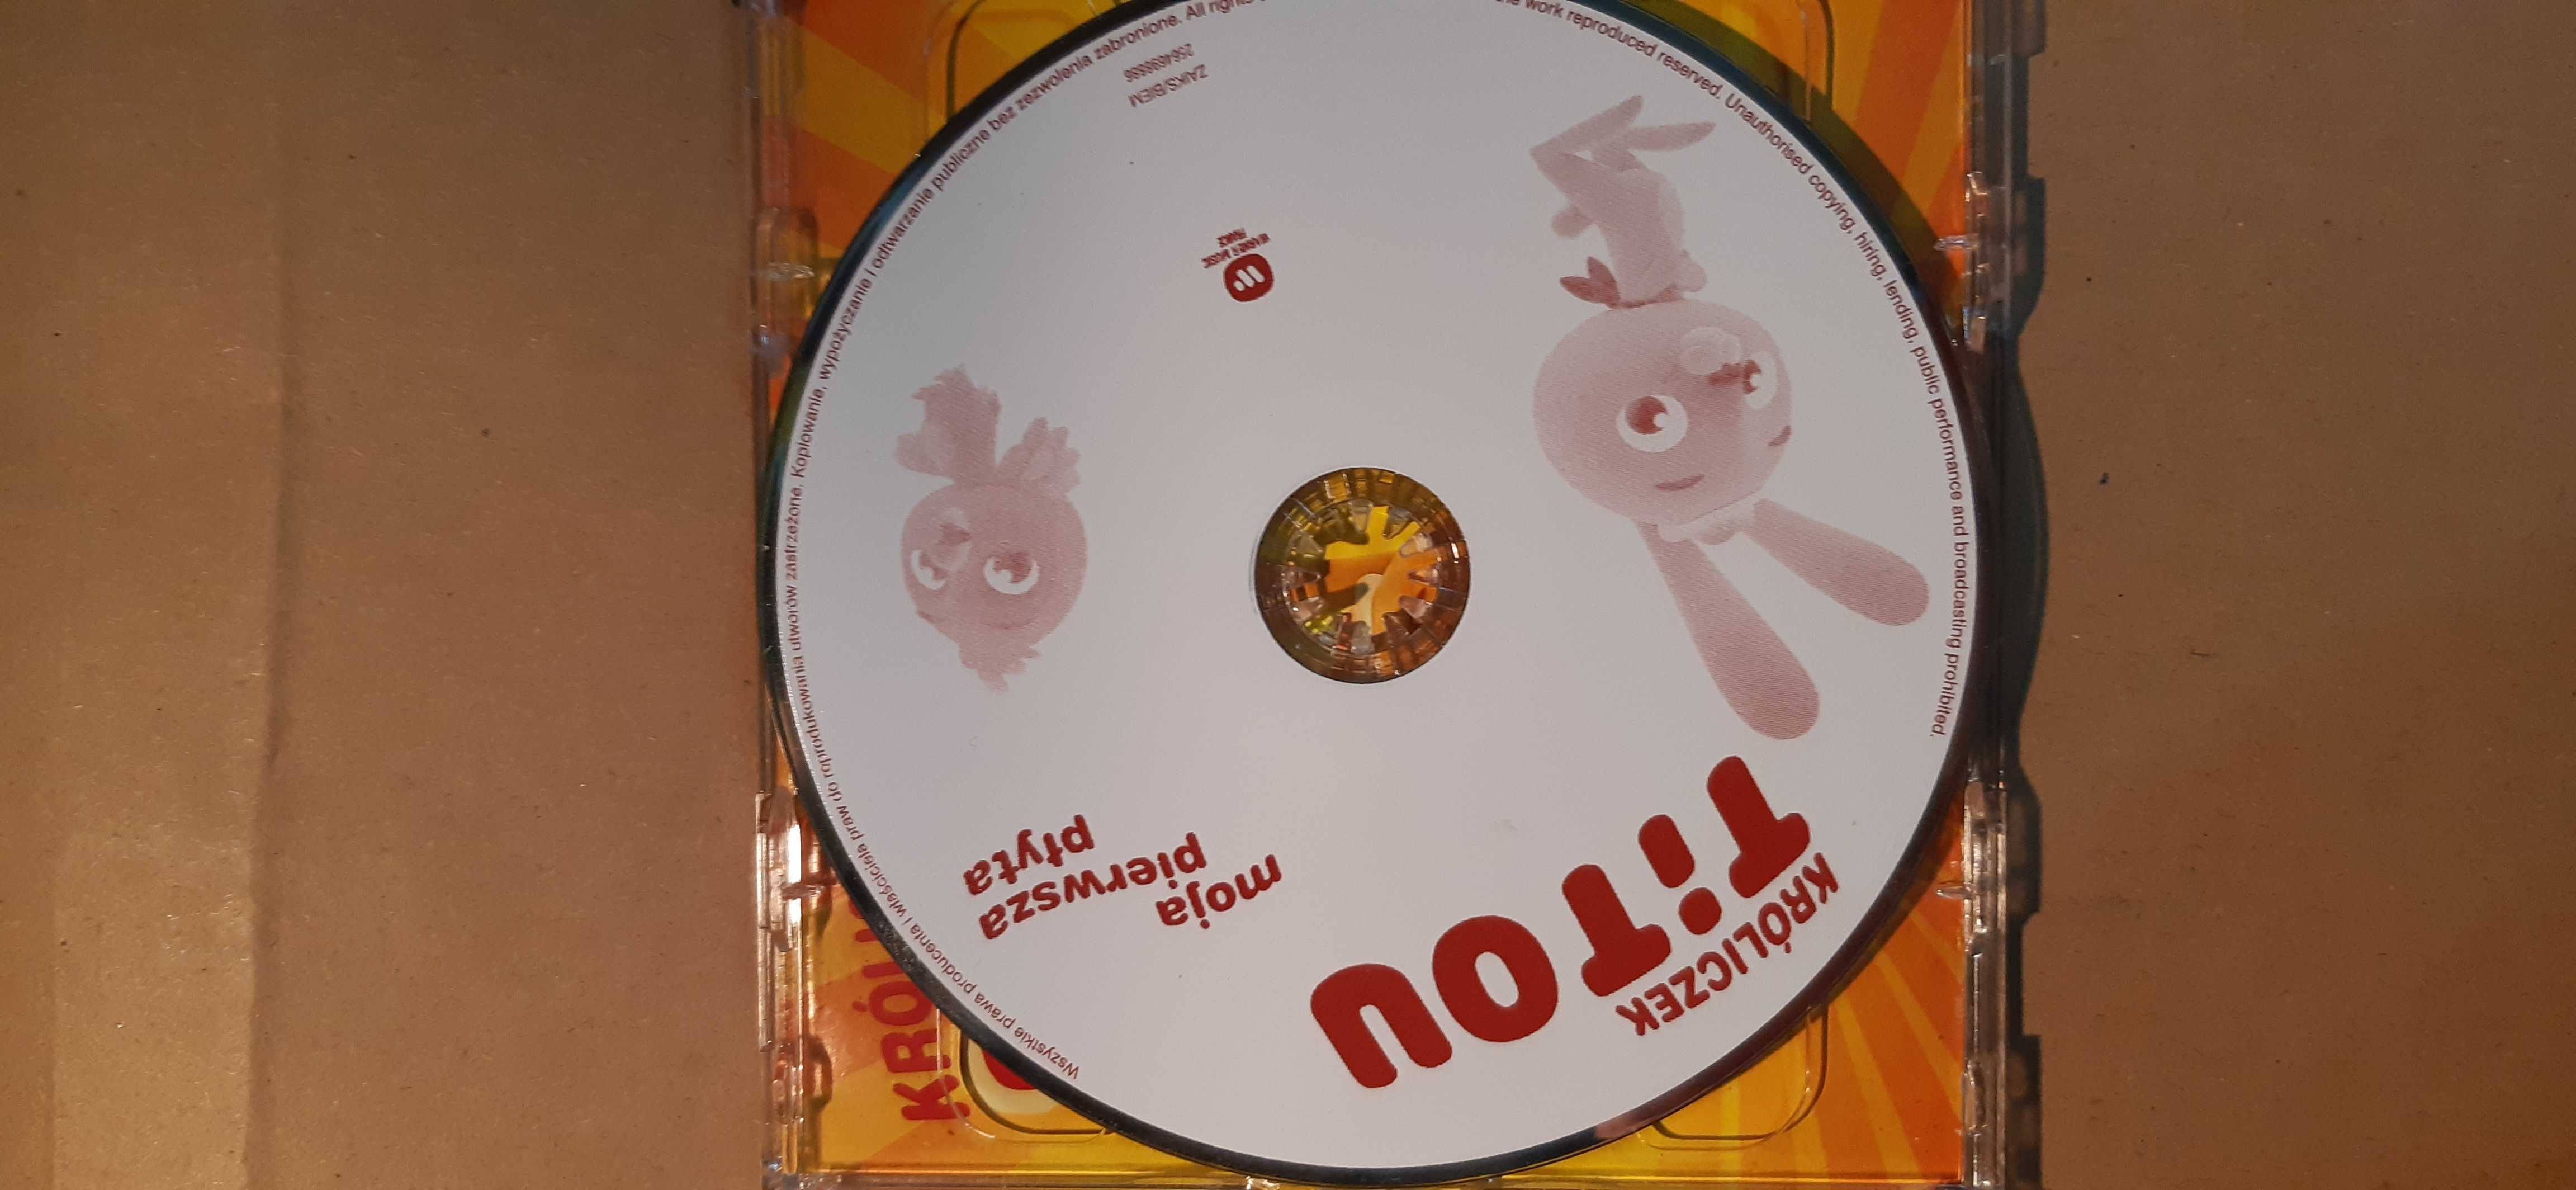 Króliczek Titou MOJA PIERWSZA PŁYTA CD+DVD i maklejki